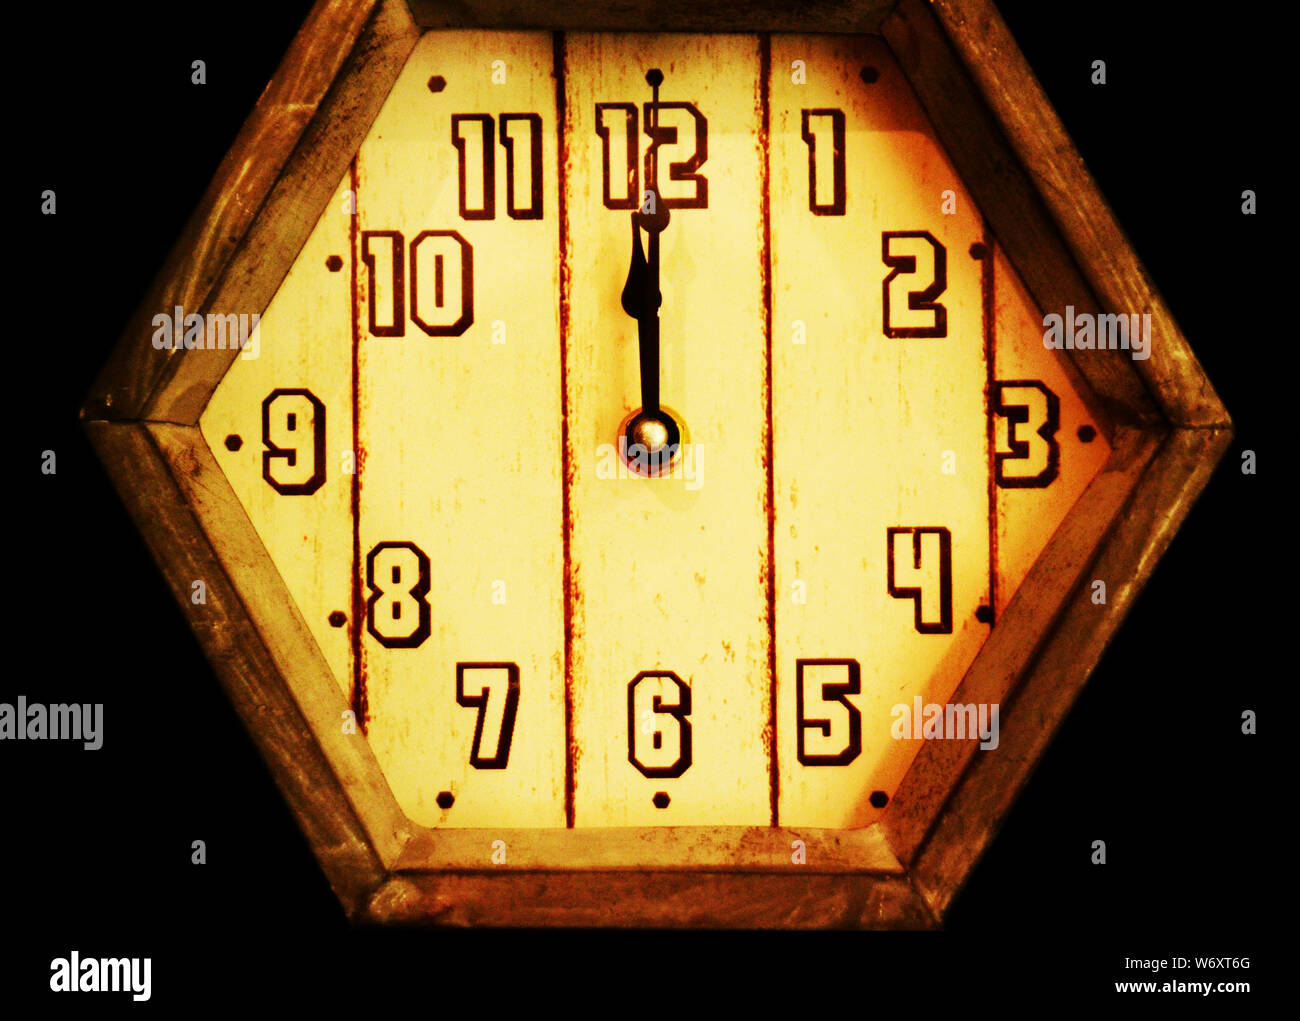 Mitternacht: Eine alte Holzuhr im Retro-Stil, die kurz nach Mitternacht steht, ist in einem schwarzen leeren Raum zu sehen. Stockfoto